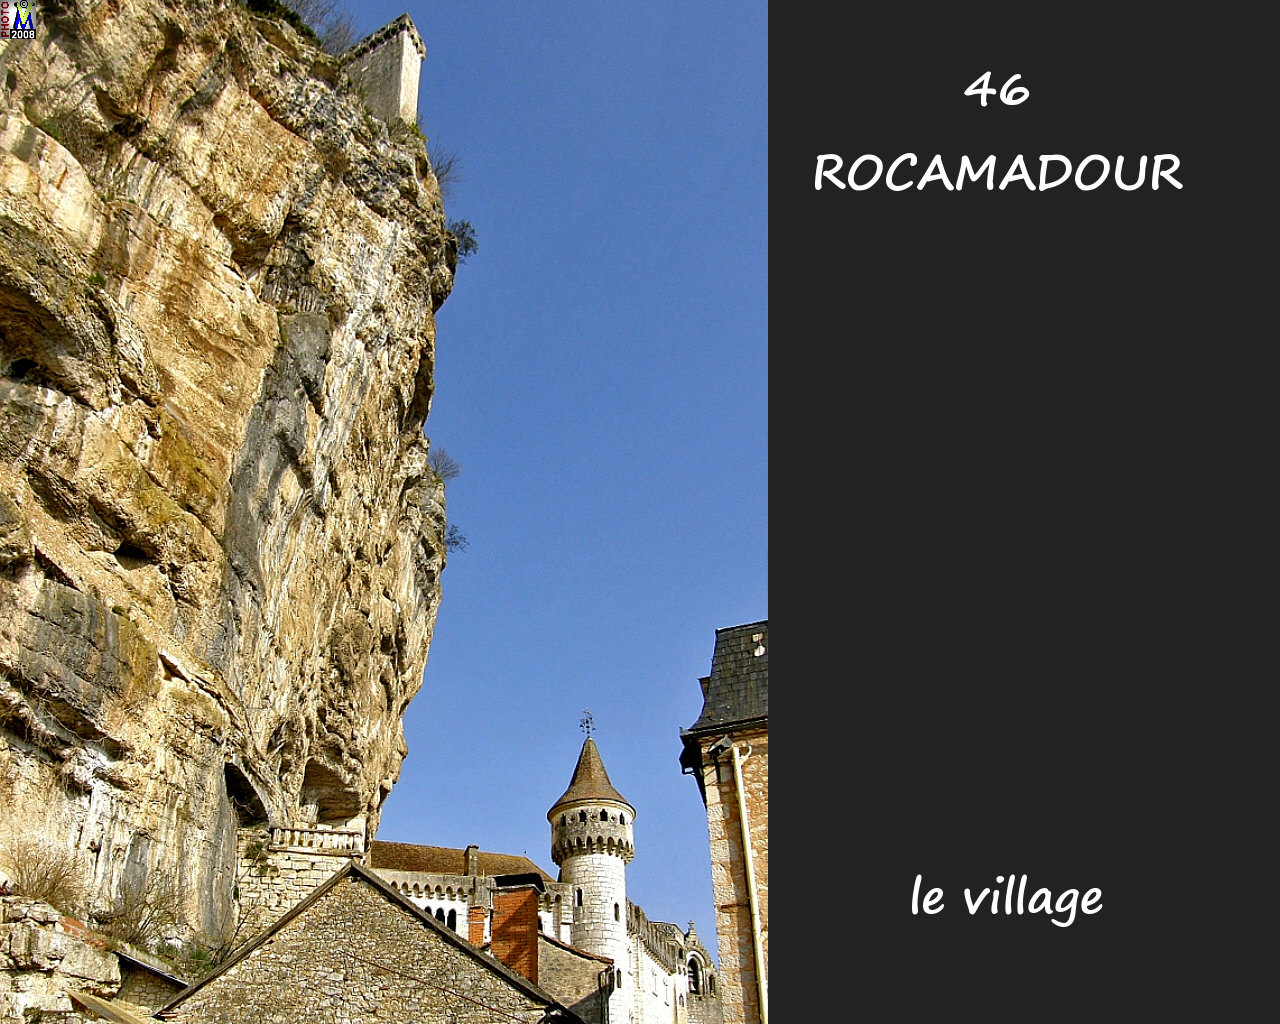 46ROCAMADOUR_village_170.jpg